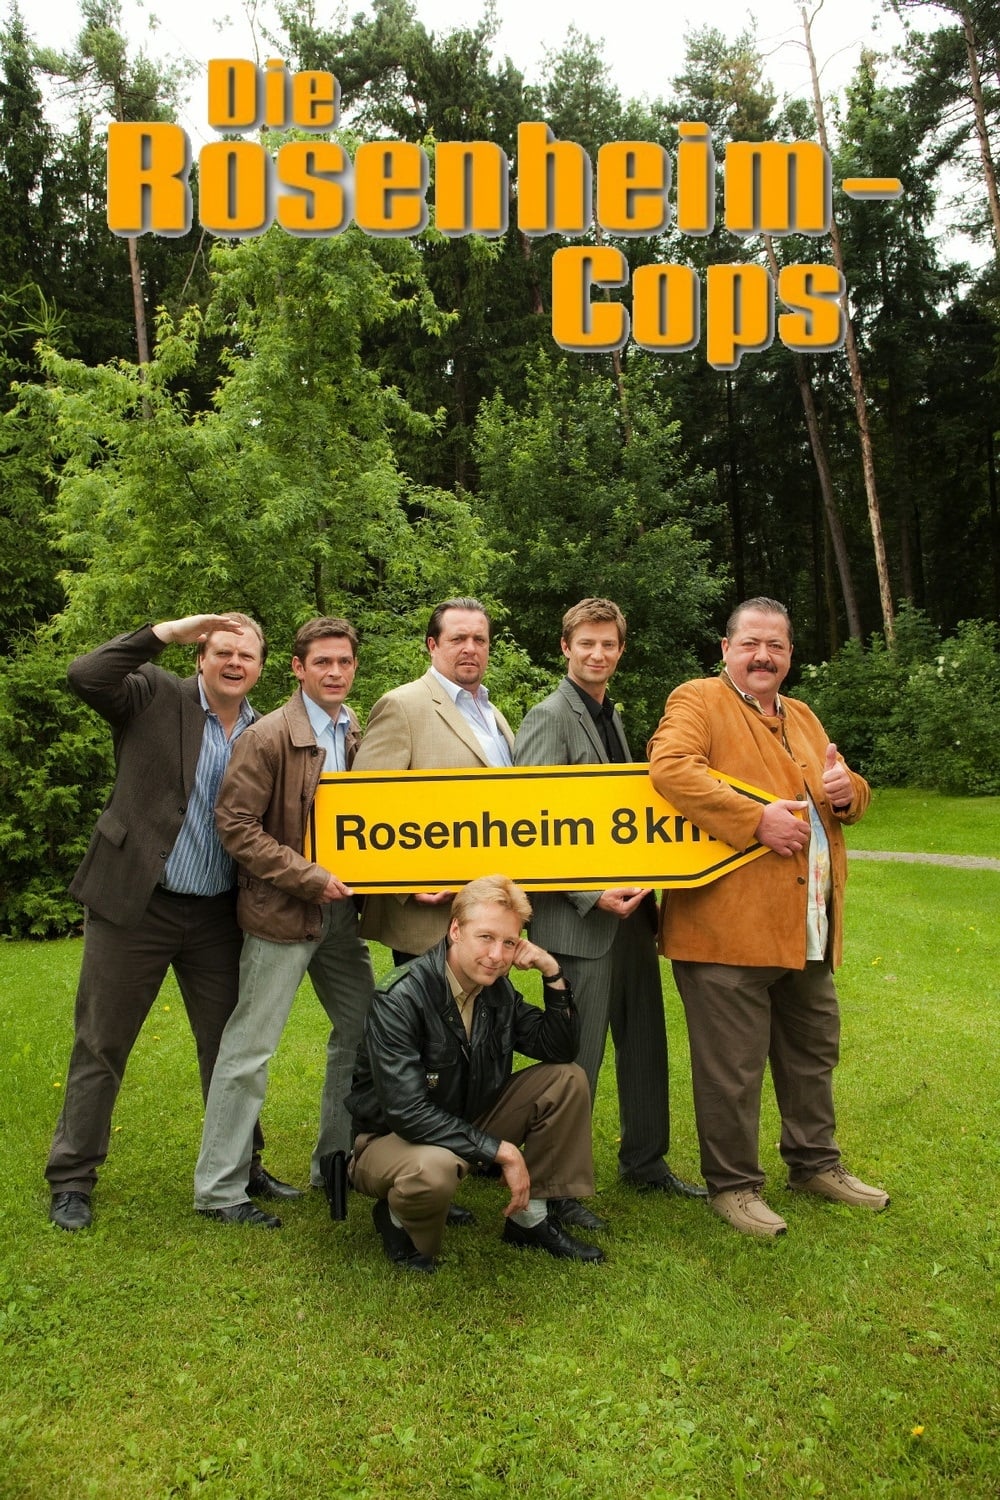 Die Rosenheim-Cops (2002)